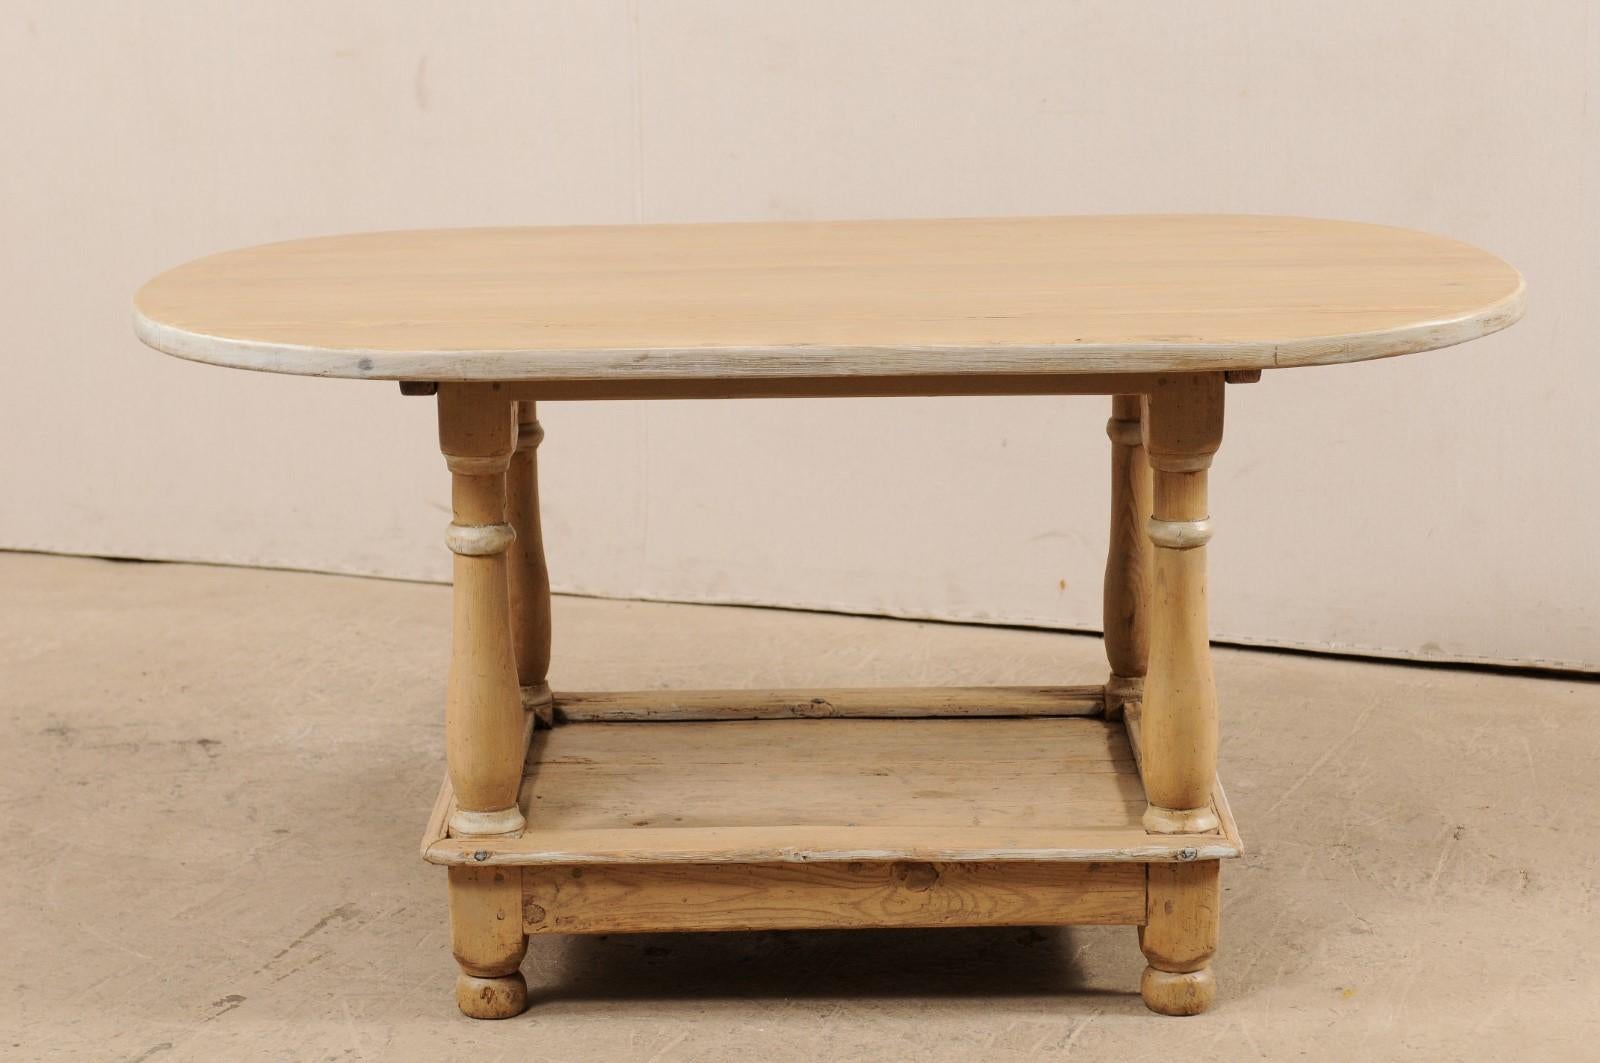 Ein schwedischer, fast ovaler, zweistöckiger Mitteltisch aus dem frühen 19. Jahrhundert. Dieser antike Tisch aus Schweden hat eine meist ovale Platte mit geraden Kanten an den beiden längeren Seiten. Er wird von vier robusten, gedrechselten Beinen